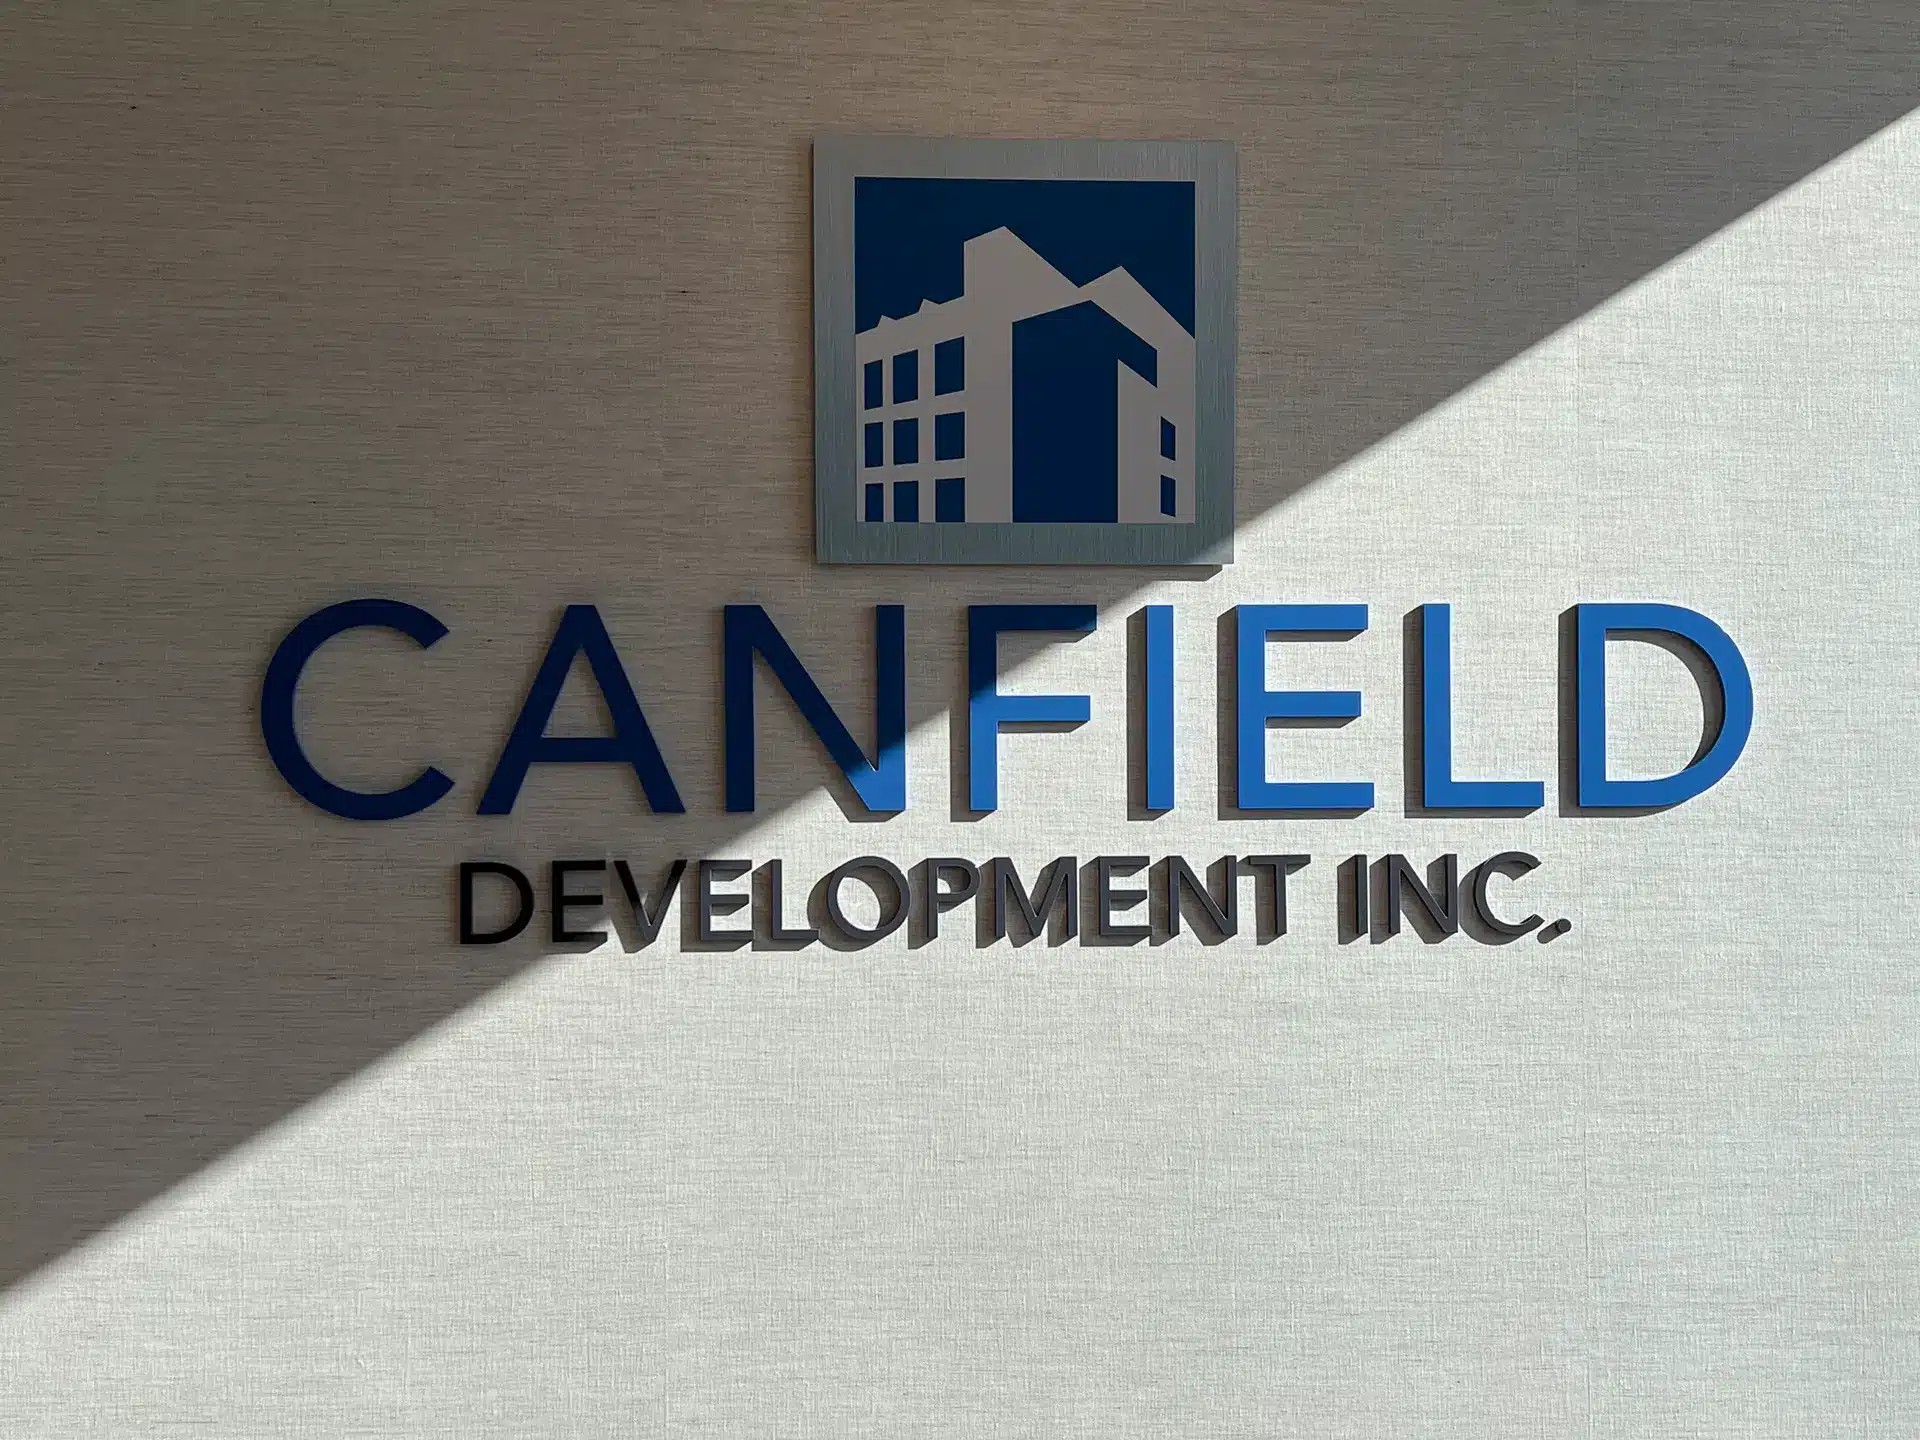 Canfield Development Inc.